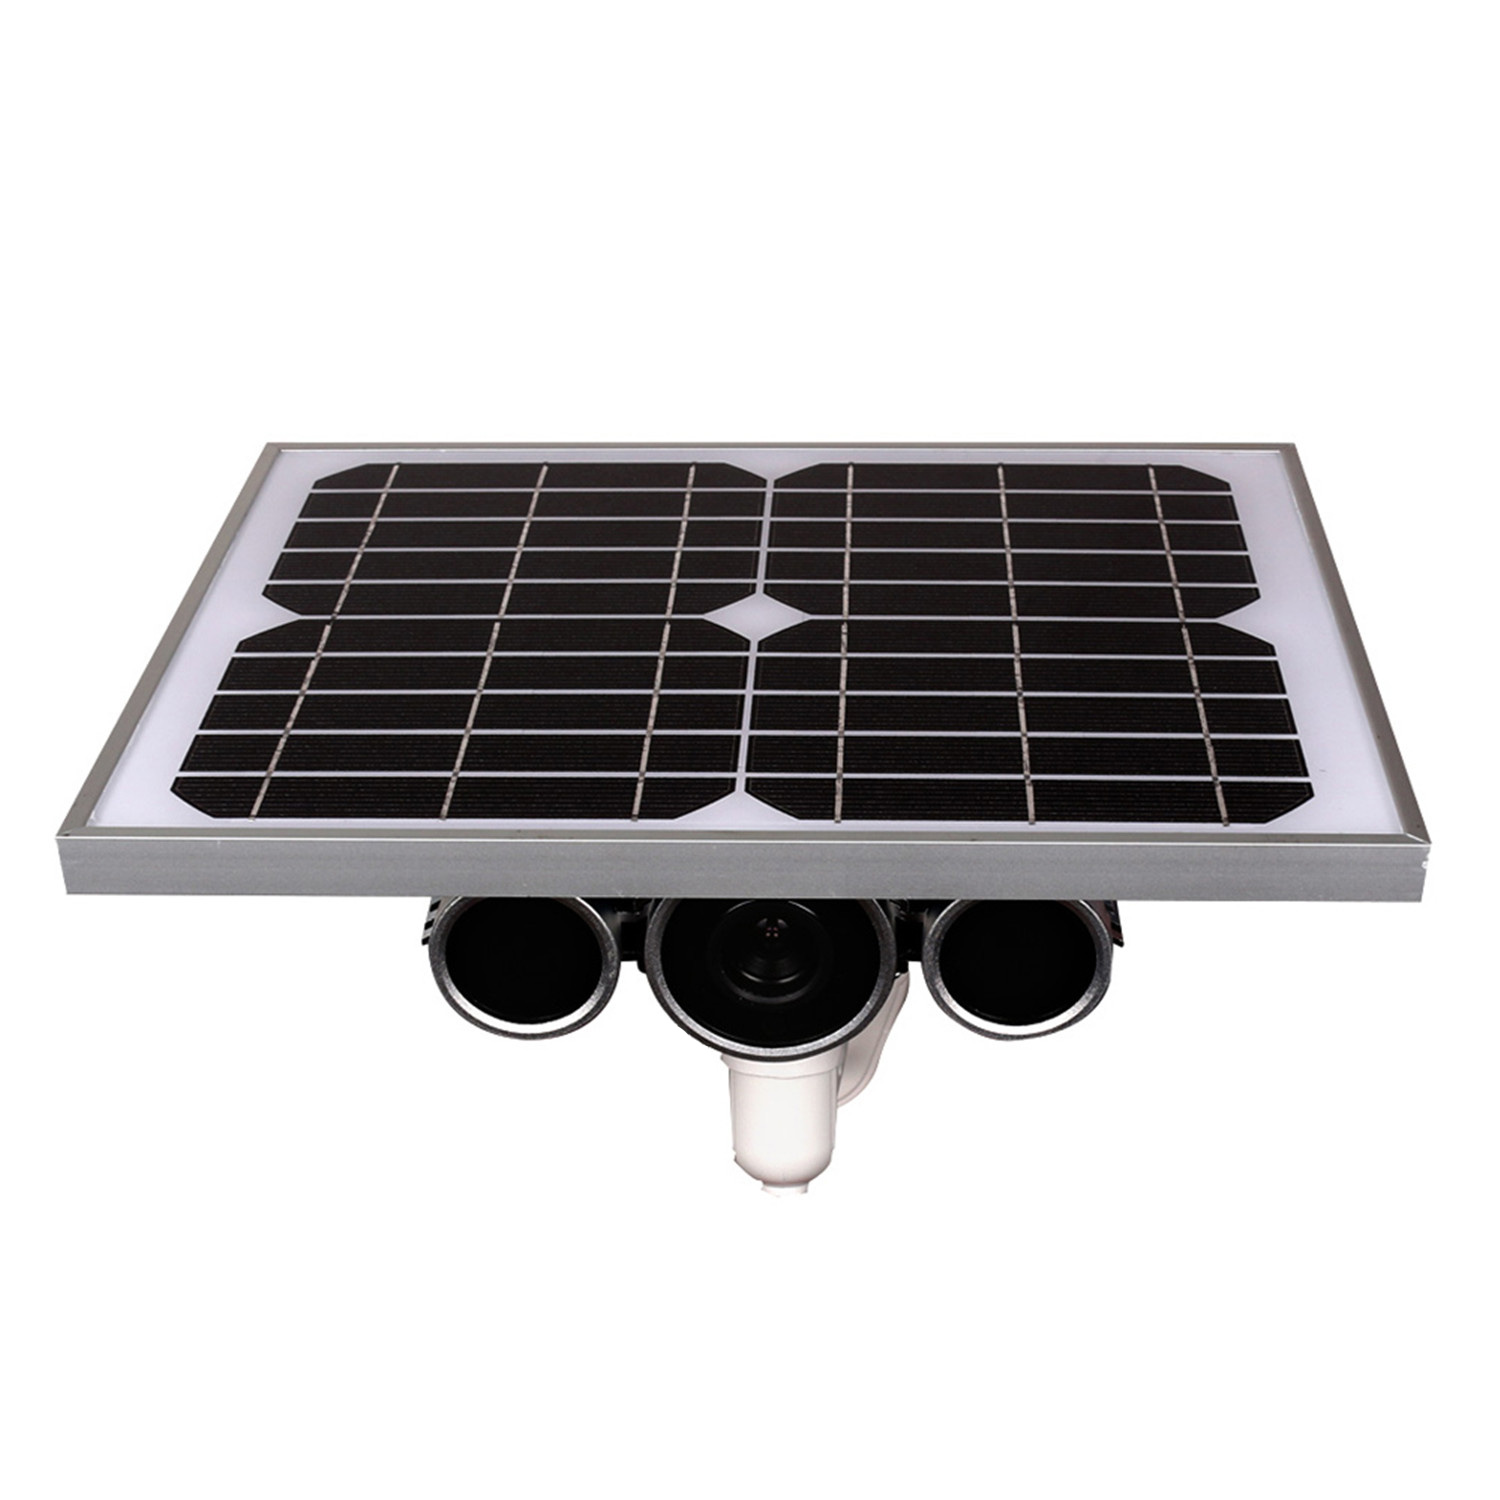 Solar camera